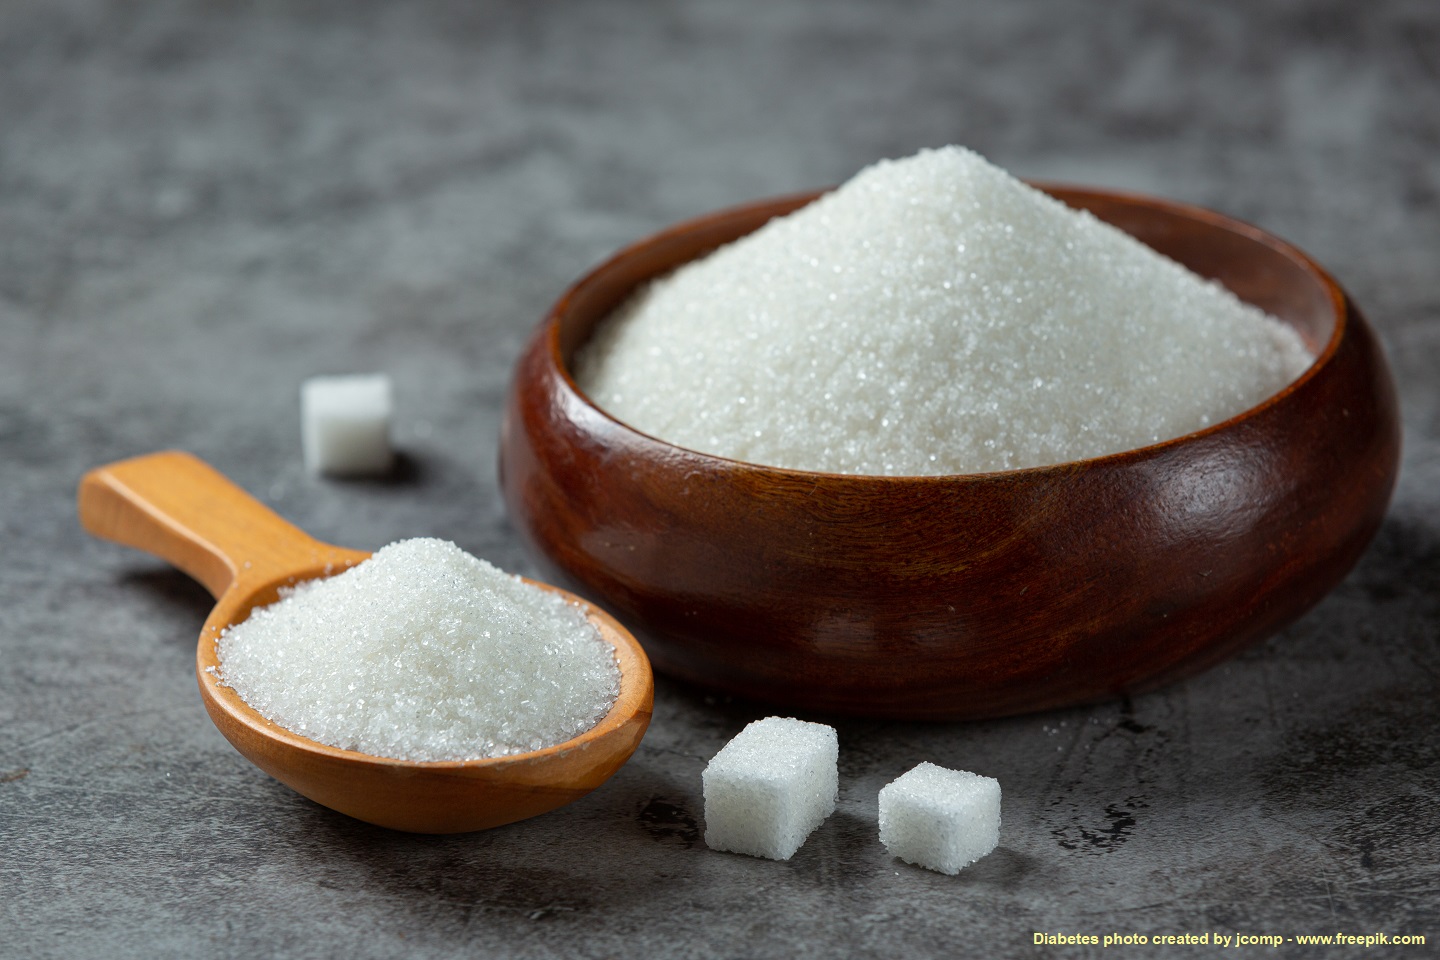 อนท. คาดท่องเที่ยวดันการบริโภคน้ำตาลทรายในประเทศปี 2566 แตะ 25 ล้านกระสอบ